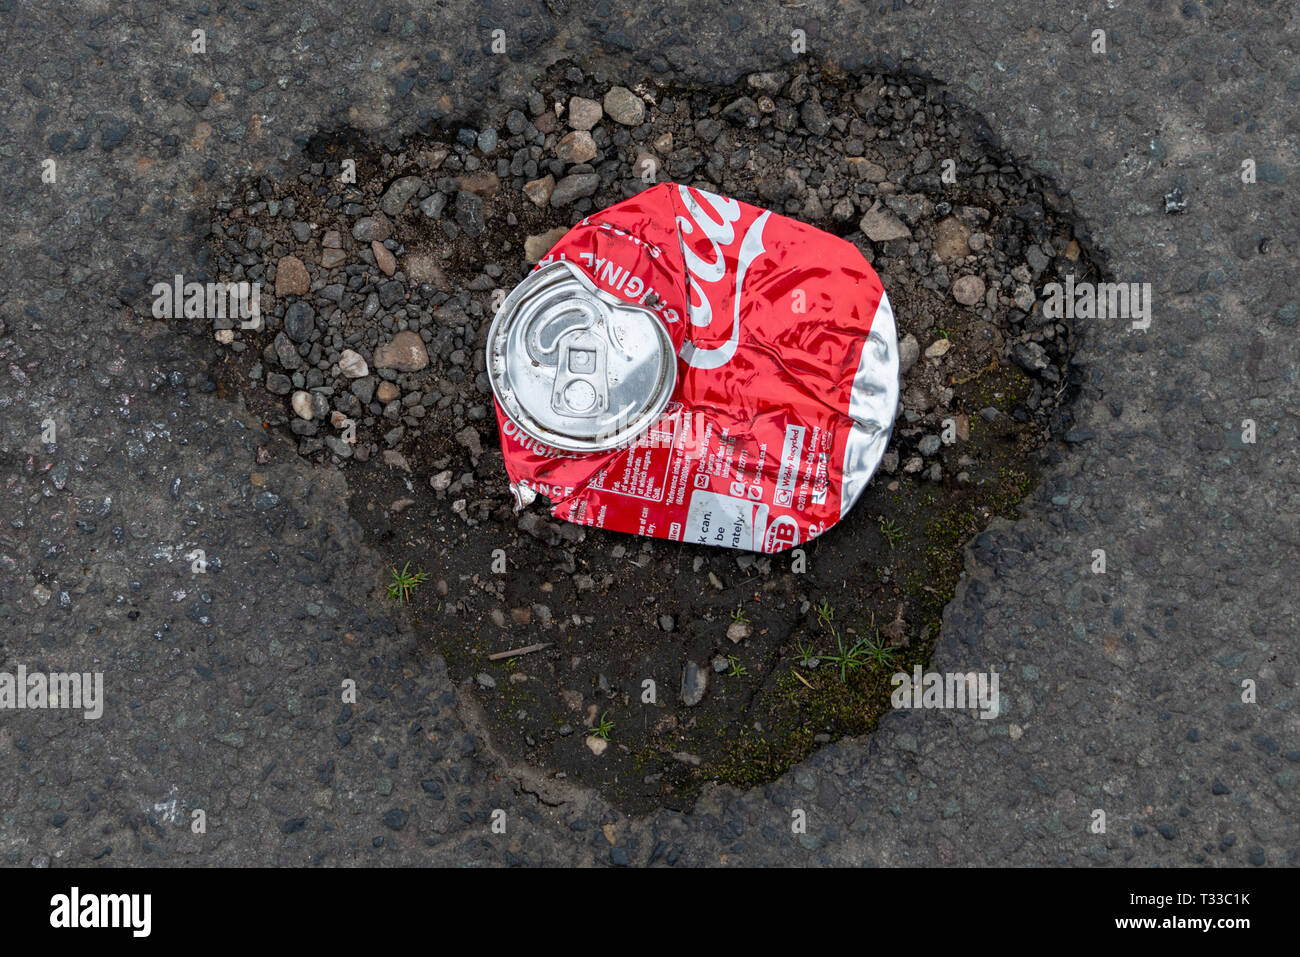 Stratford-upon-Avon, Warwickshire, England UK 23. März 2019 zerquetscht Coca Cola Dose und Schlagloch, die die Beschädigung der Welt durch große Corp durchgeführt Stockfoto